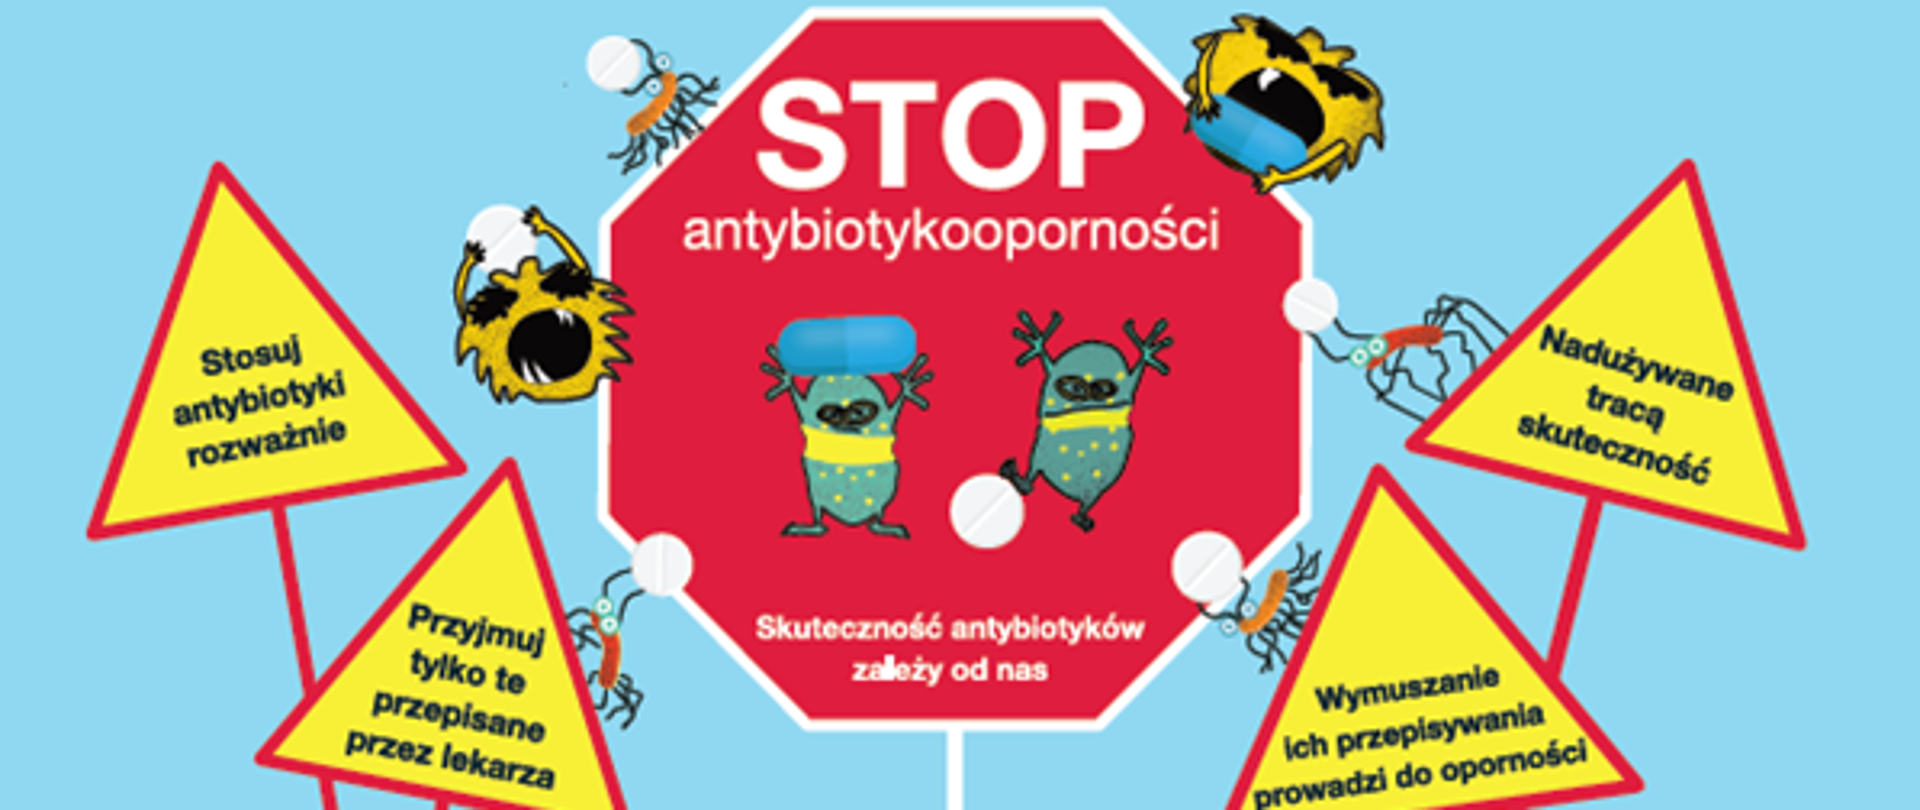 STOP_antybiotykooporności